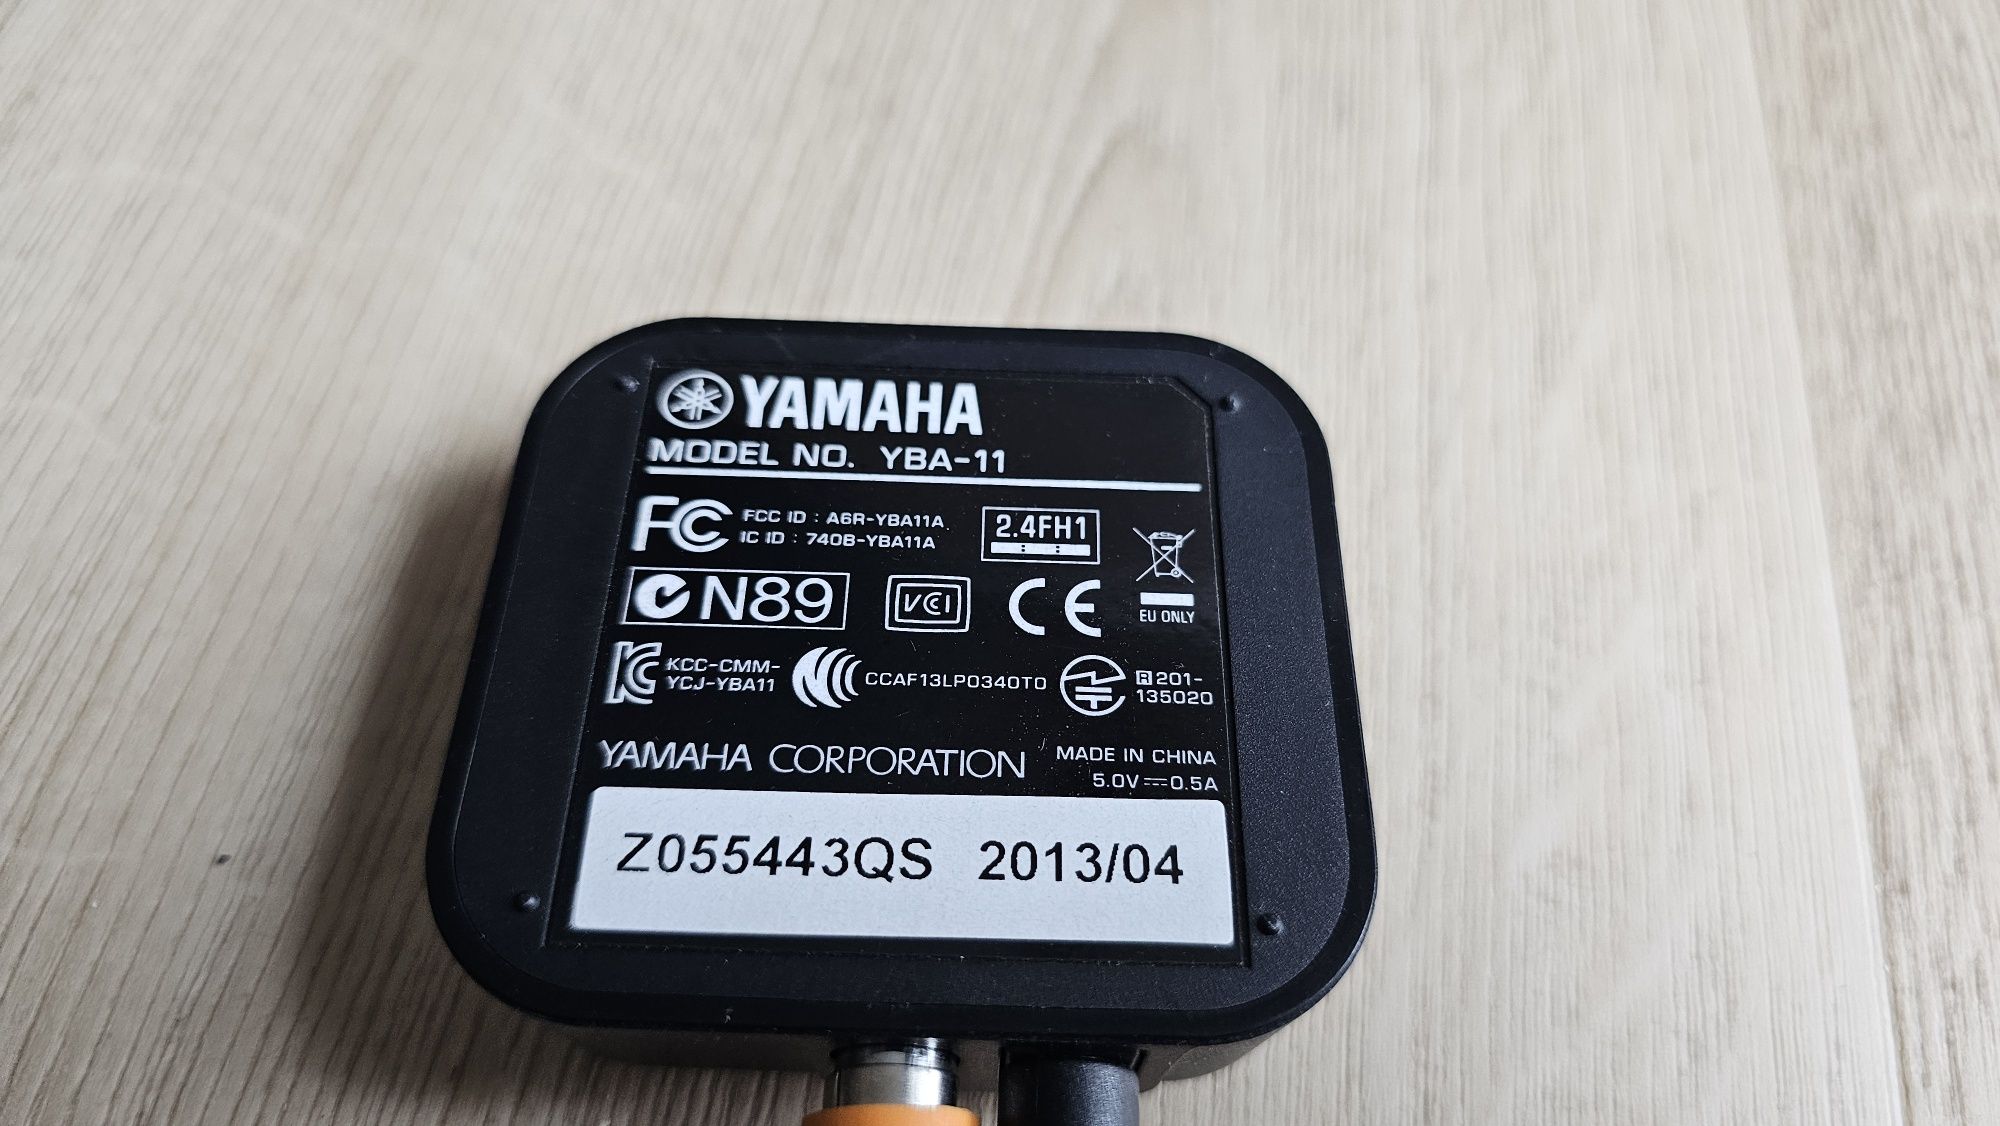 Amplituner Yamaha RX- S600 7:1